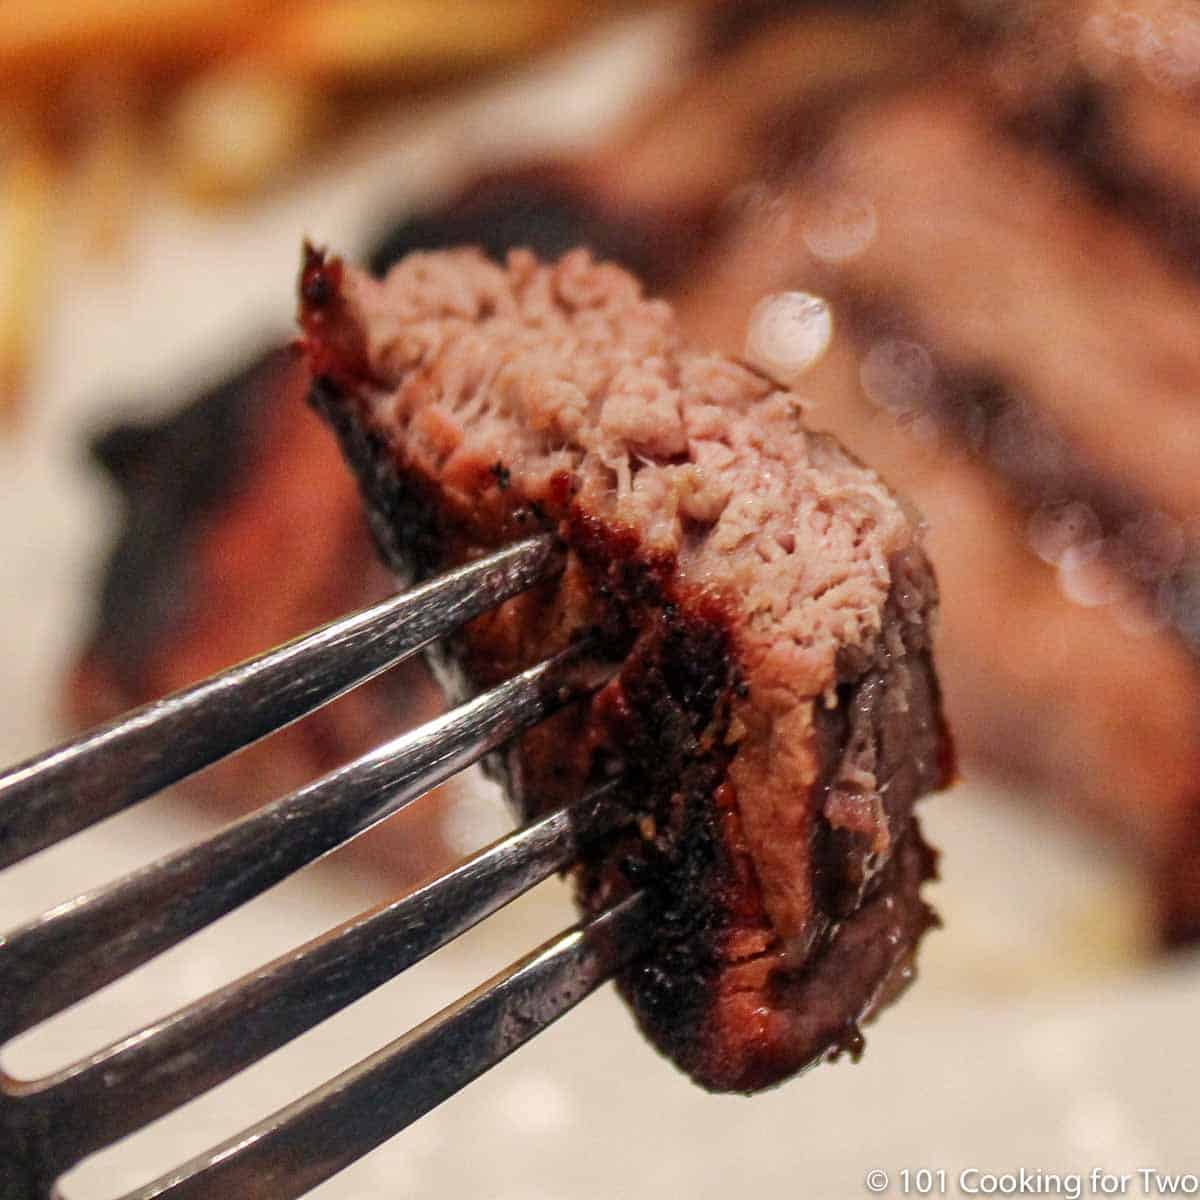 bite of steak on fork